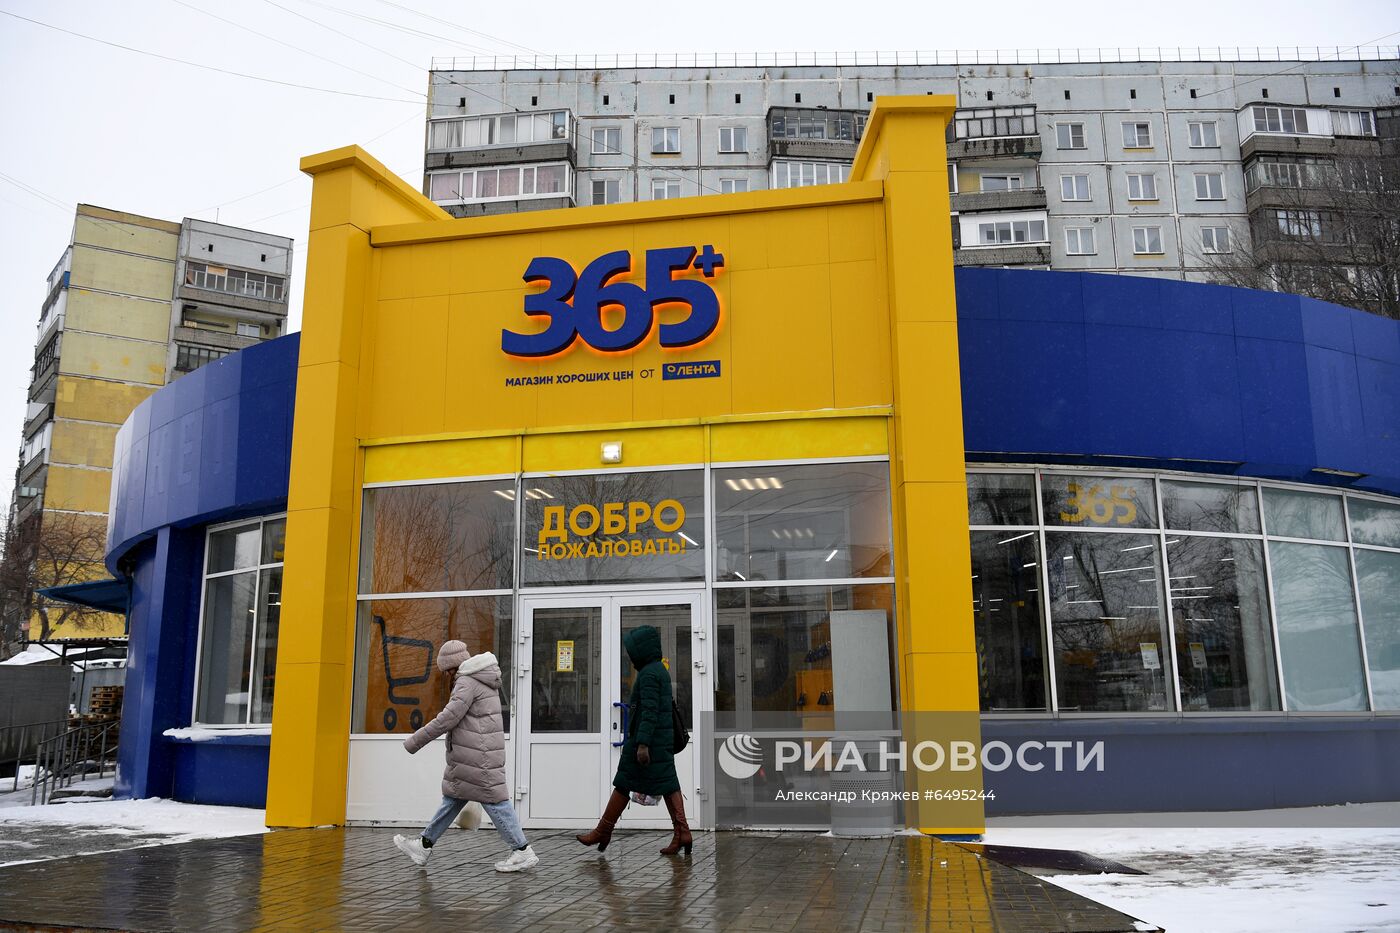 Дискаунтер "365+" торговой сети "Лента" в Новосибирске